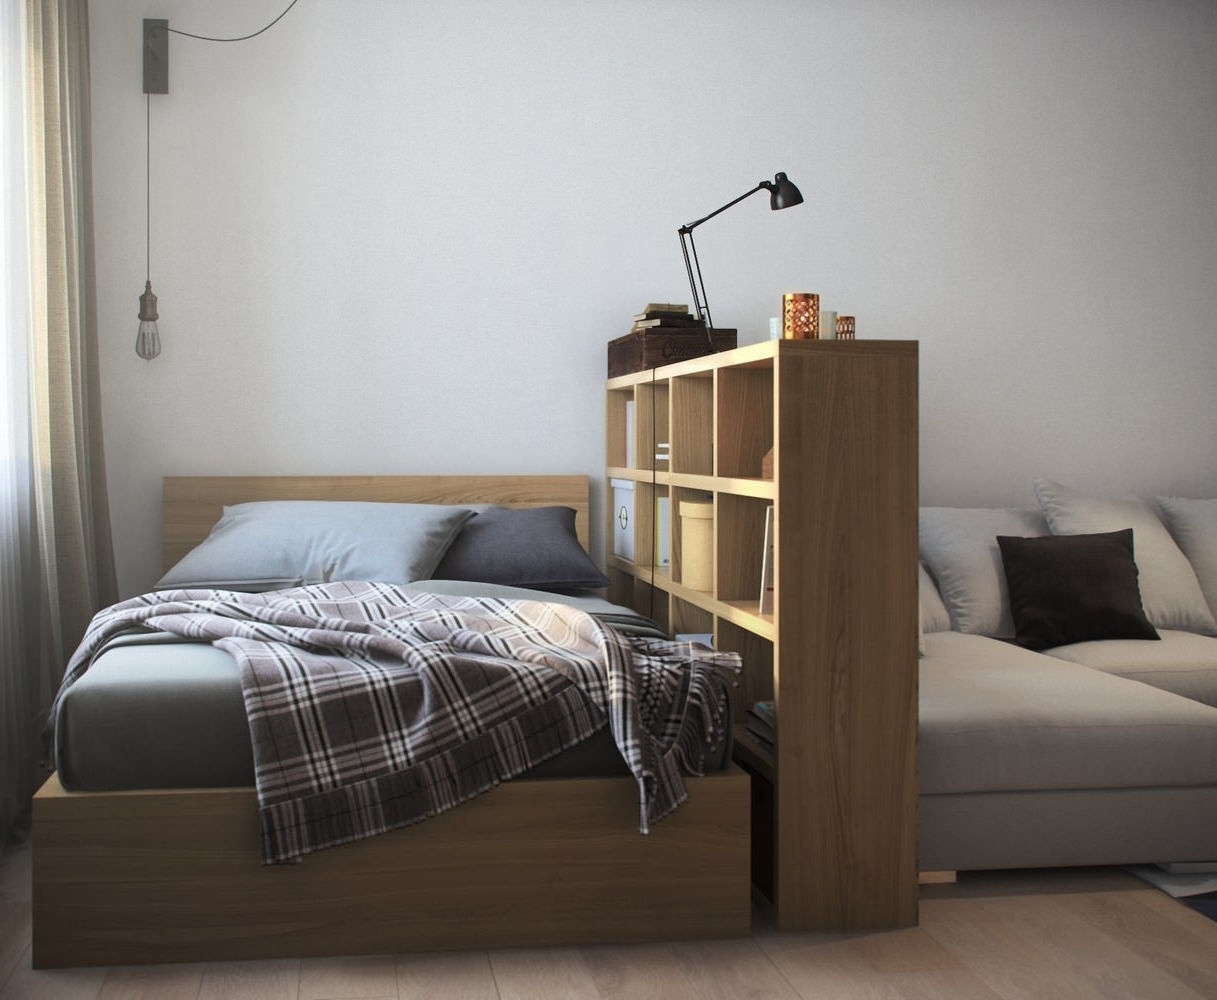 5 идей, как сэкономить пространство в спальне без затрат